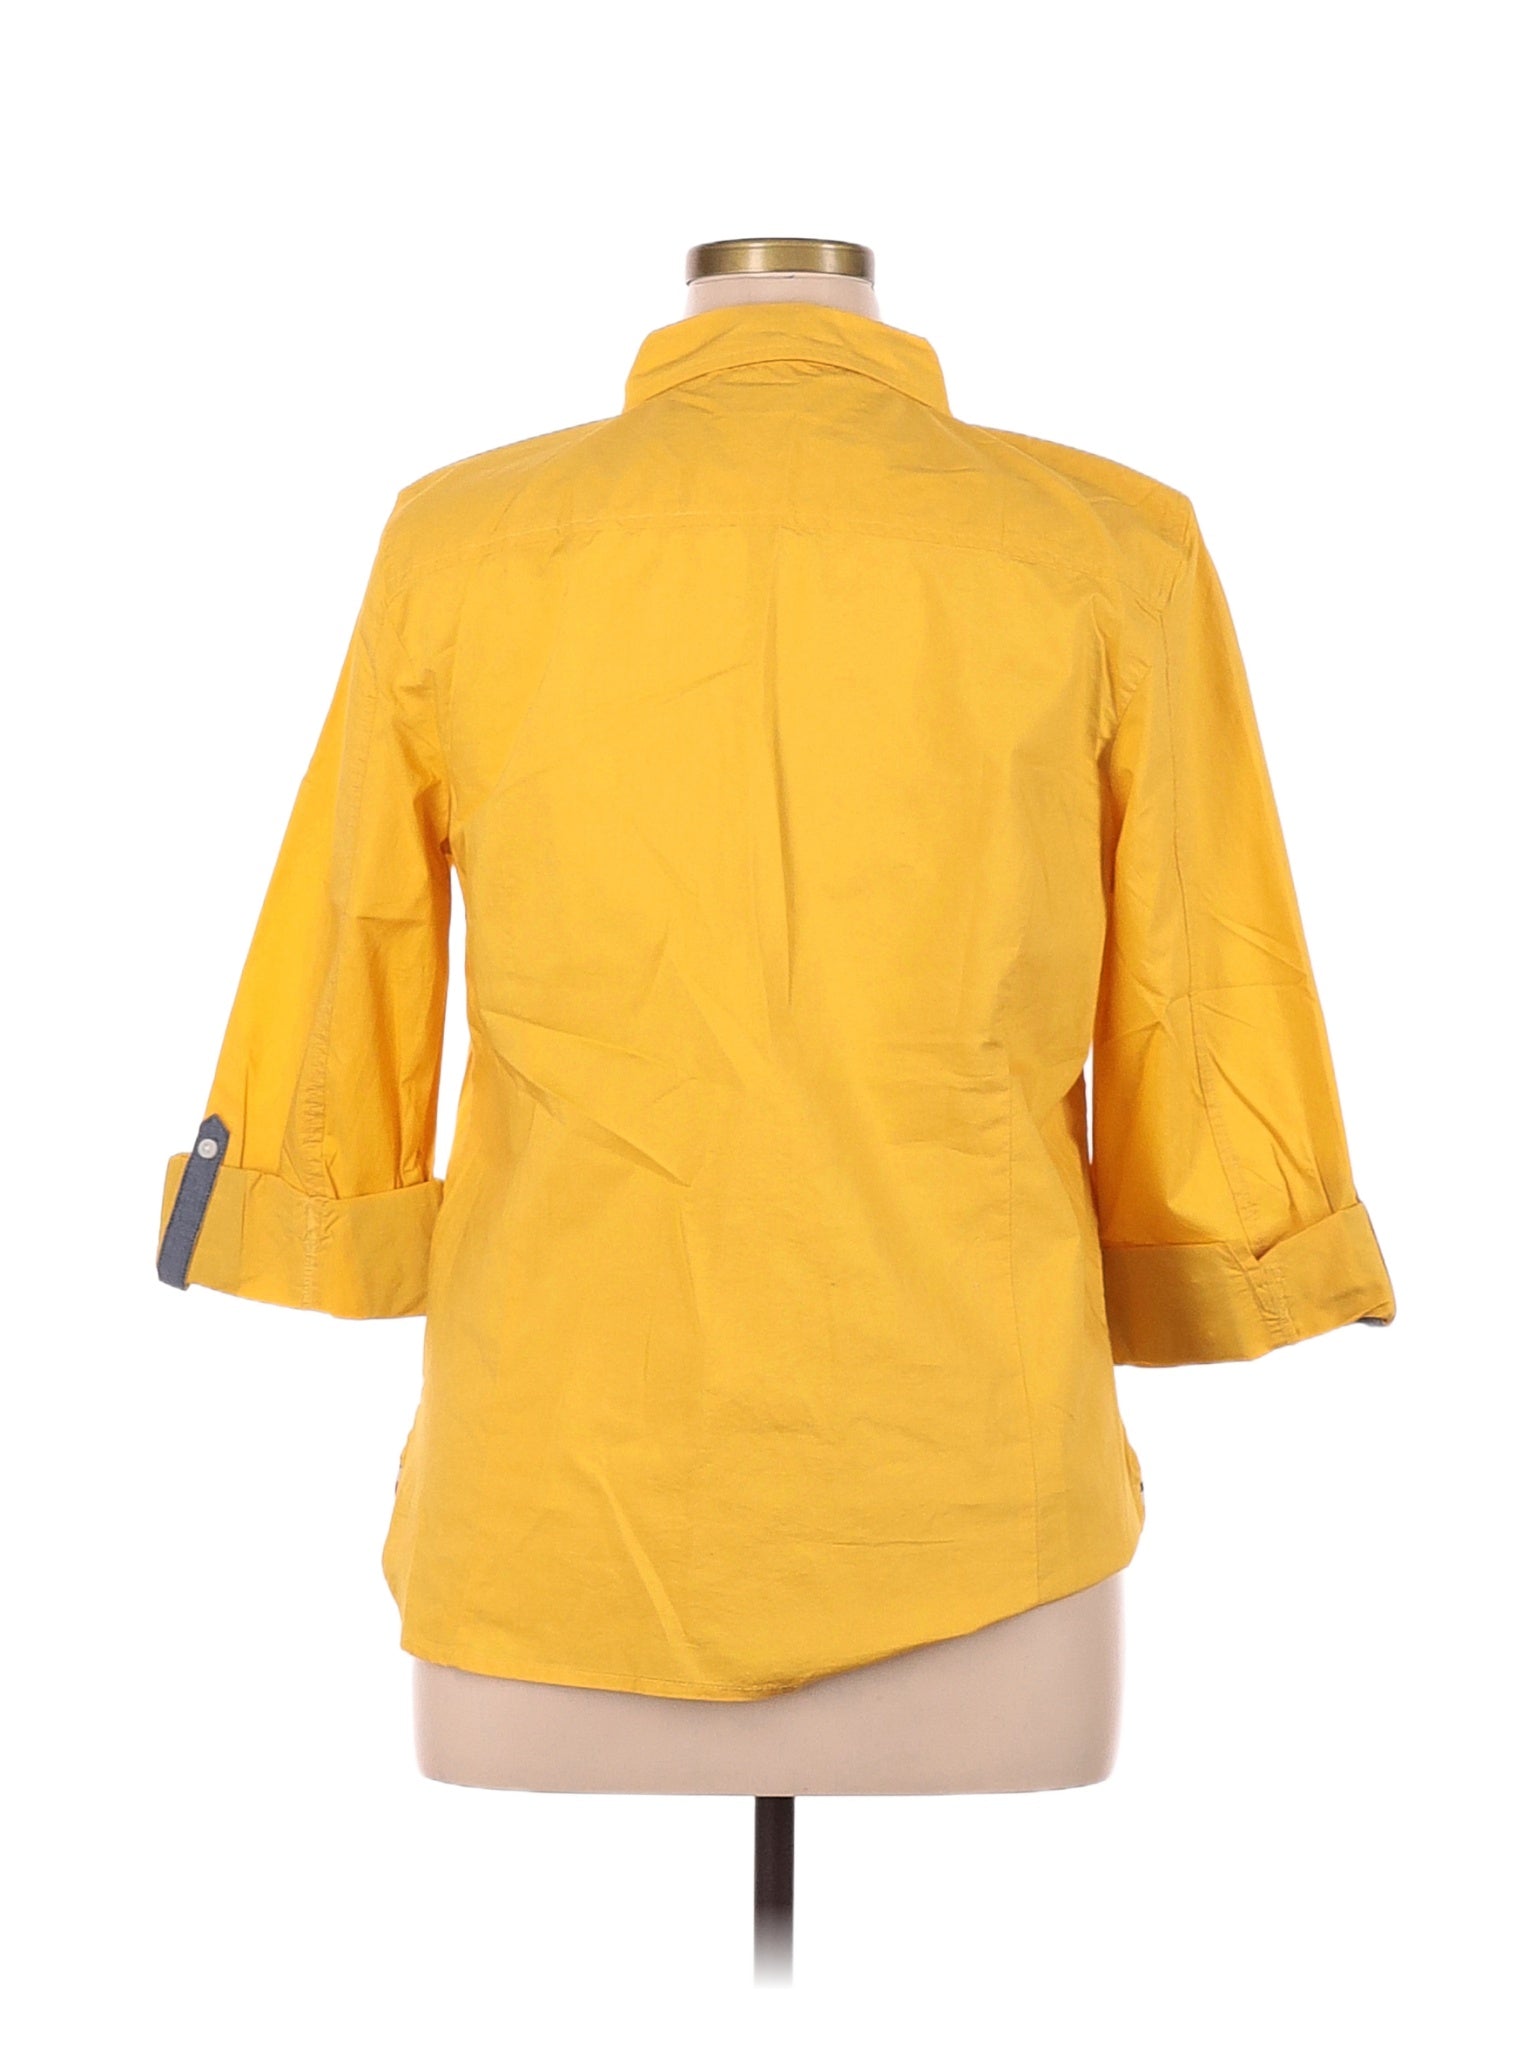 3/4 Sleeve Blouse size - XL